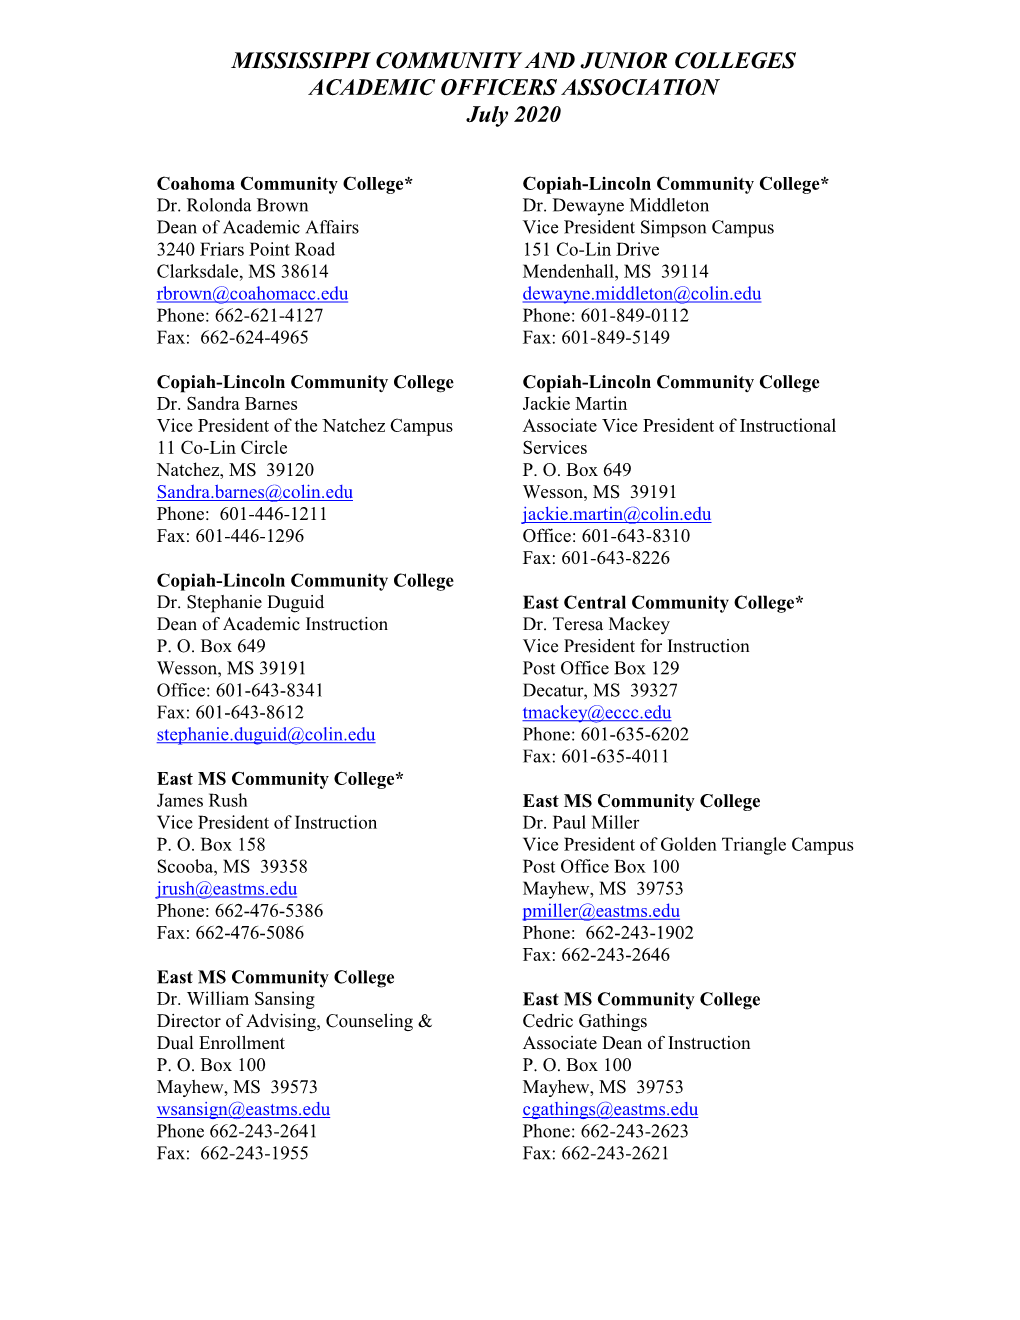 Academic Deans – Short List